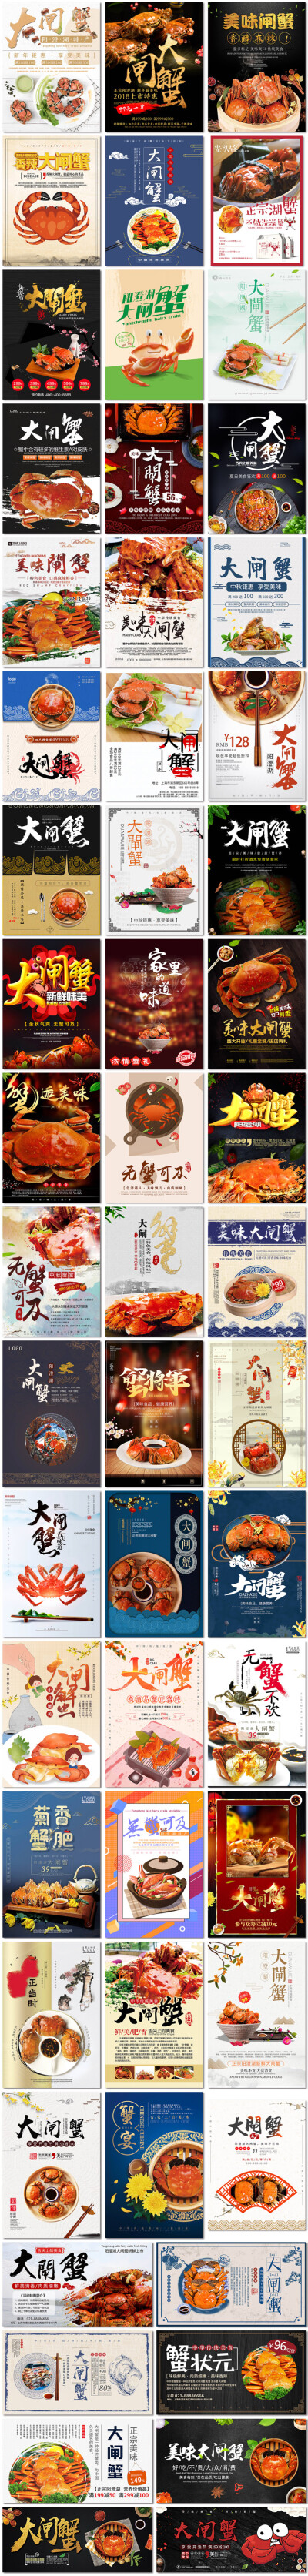 大闸蟹美味中华海鲜美味美食螃蟹中国海报展板psd模板素材设计